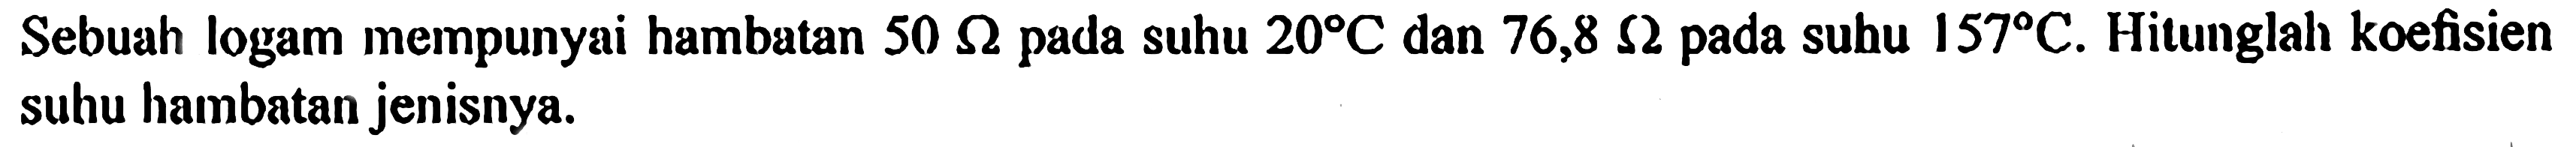 Sebuah logam mempunyai hambatan 50 ohm pada suhu 20 C dan 76,8 ohm pada subu 157 C. Hitunglah koefisien suhu hambatan jenisnya.